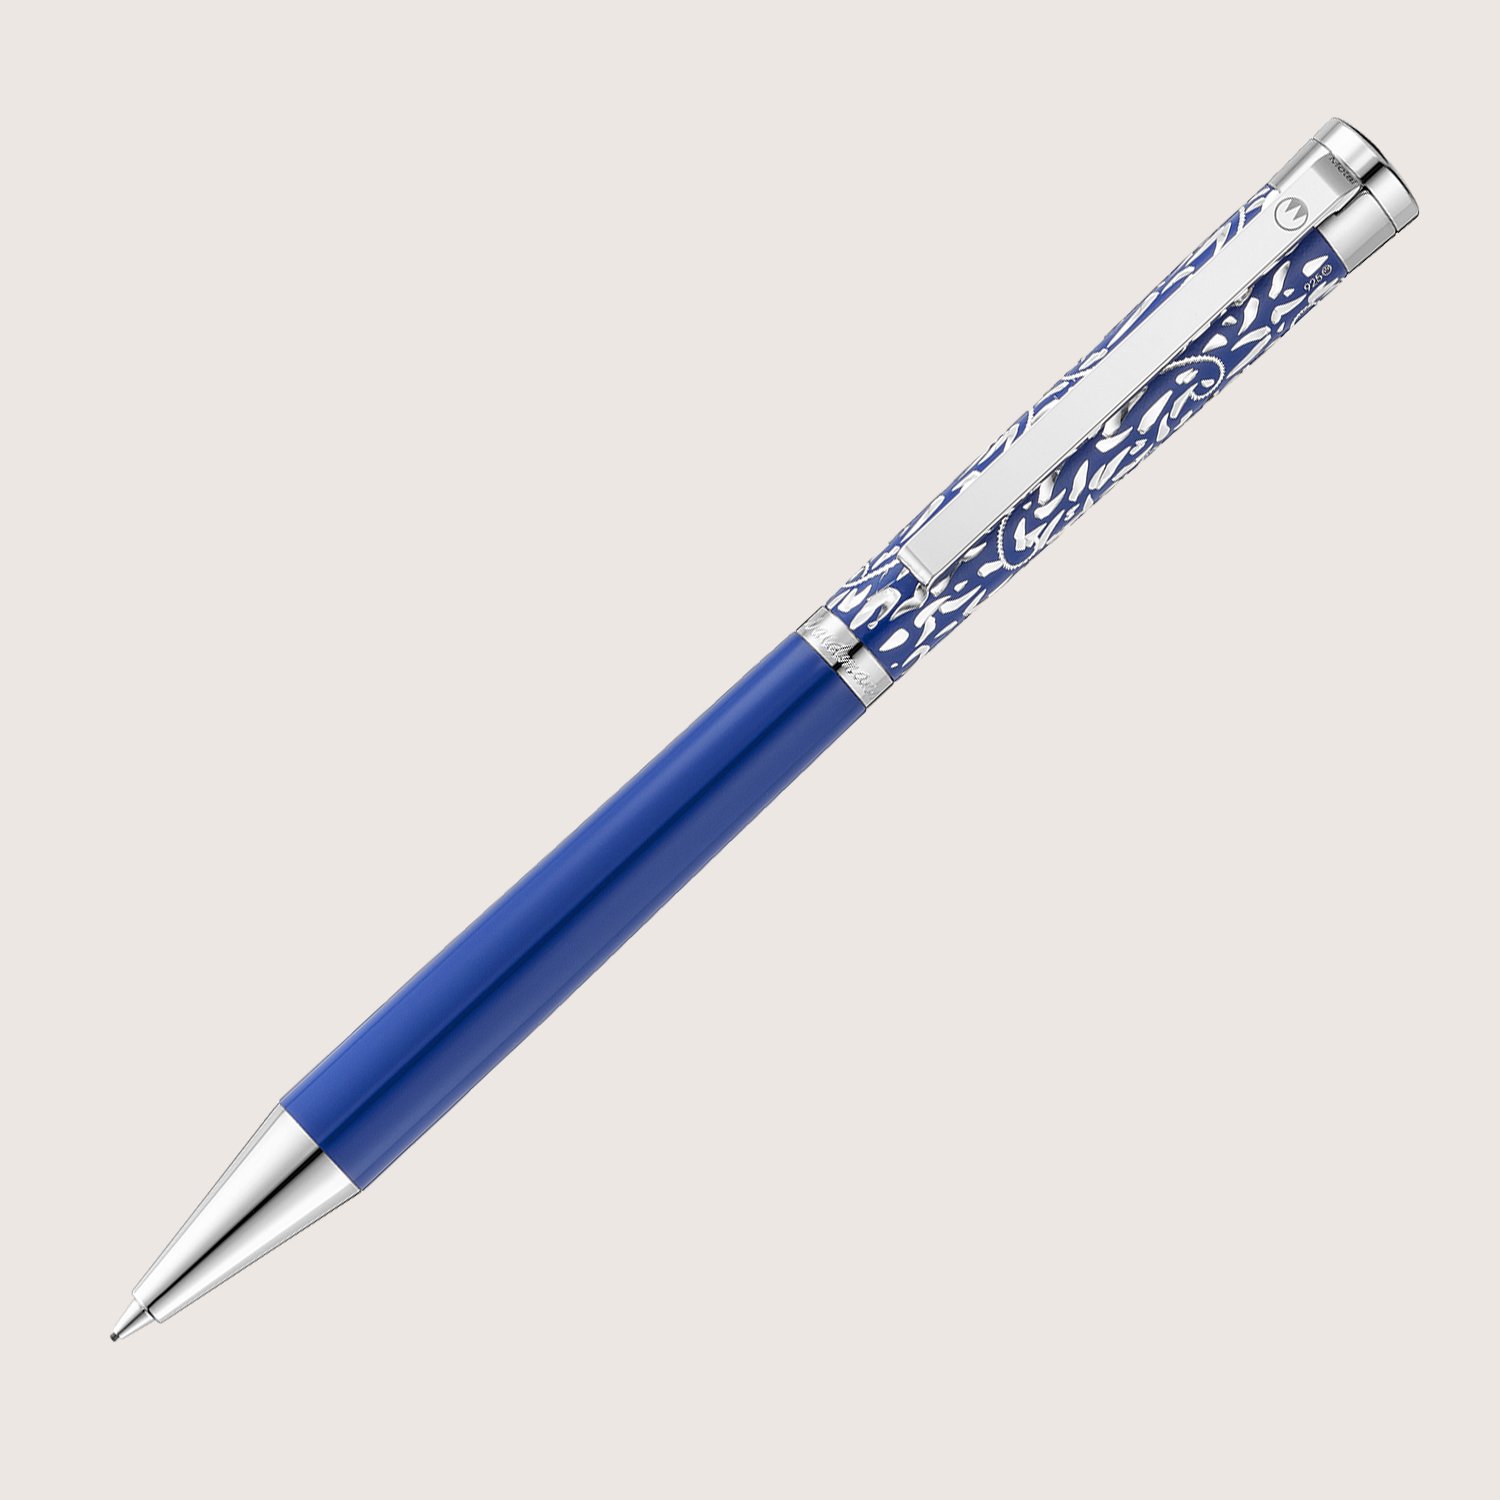 XETRA VIENNA Drehbleistift Lack blau mit Handgravur - Special Edition